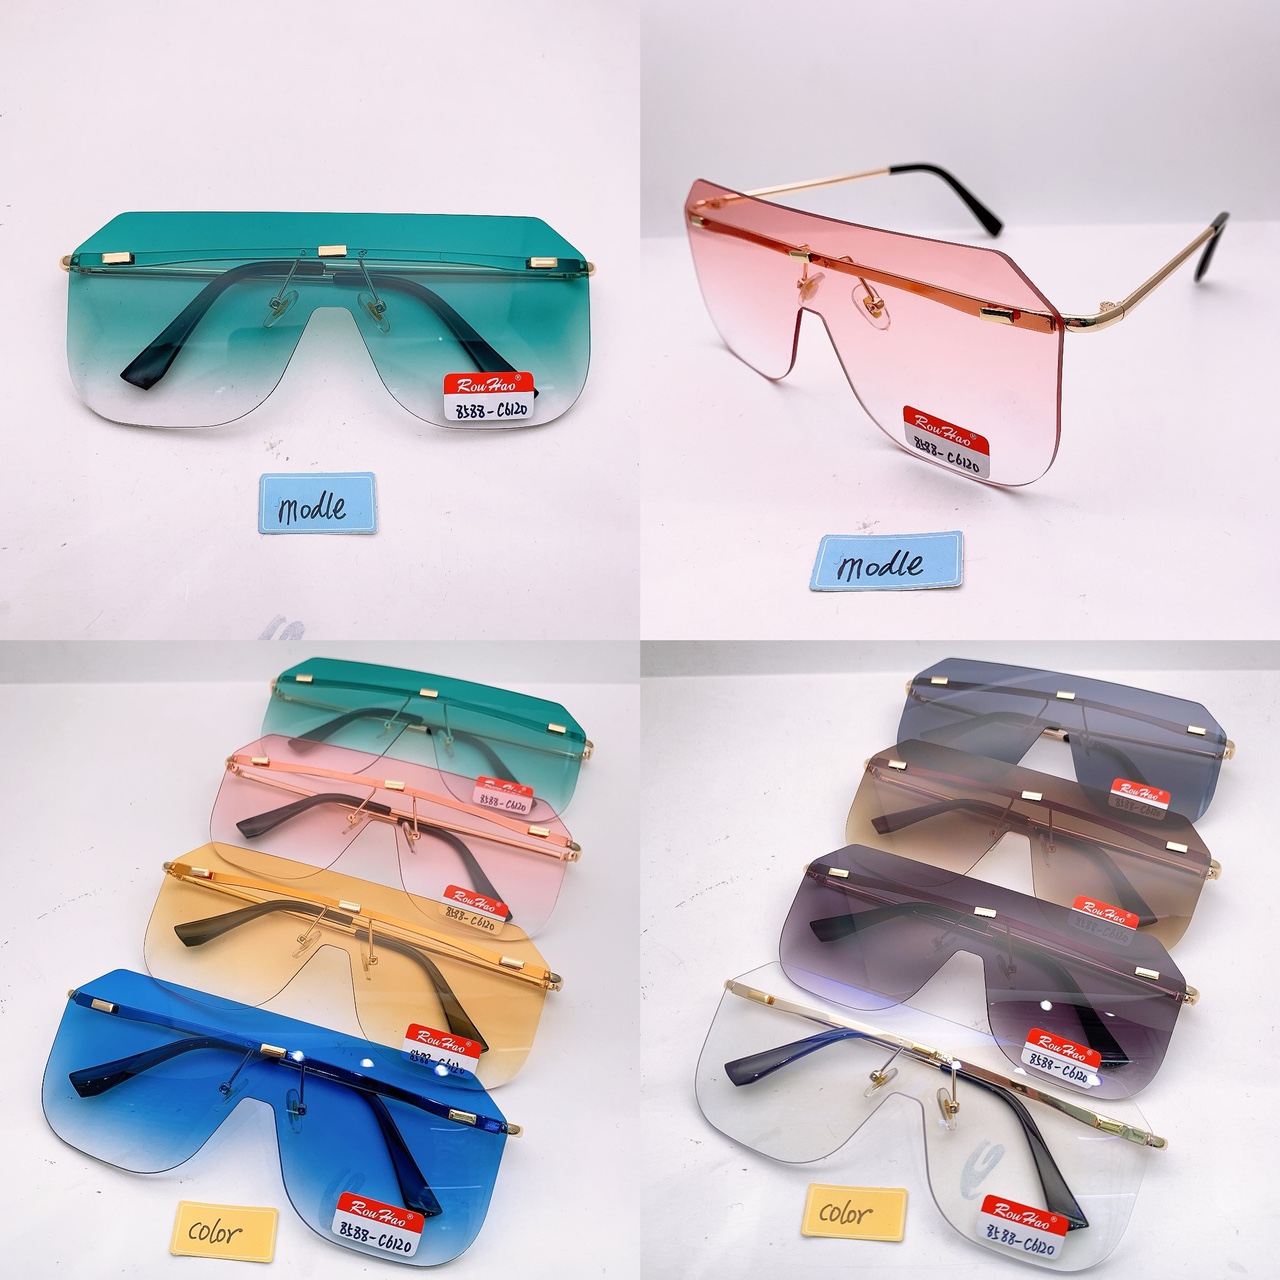 现货潮流时尚韩版太阳眼镜、眼镜、通用款眼镜